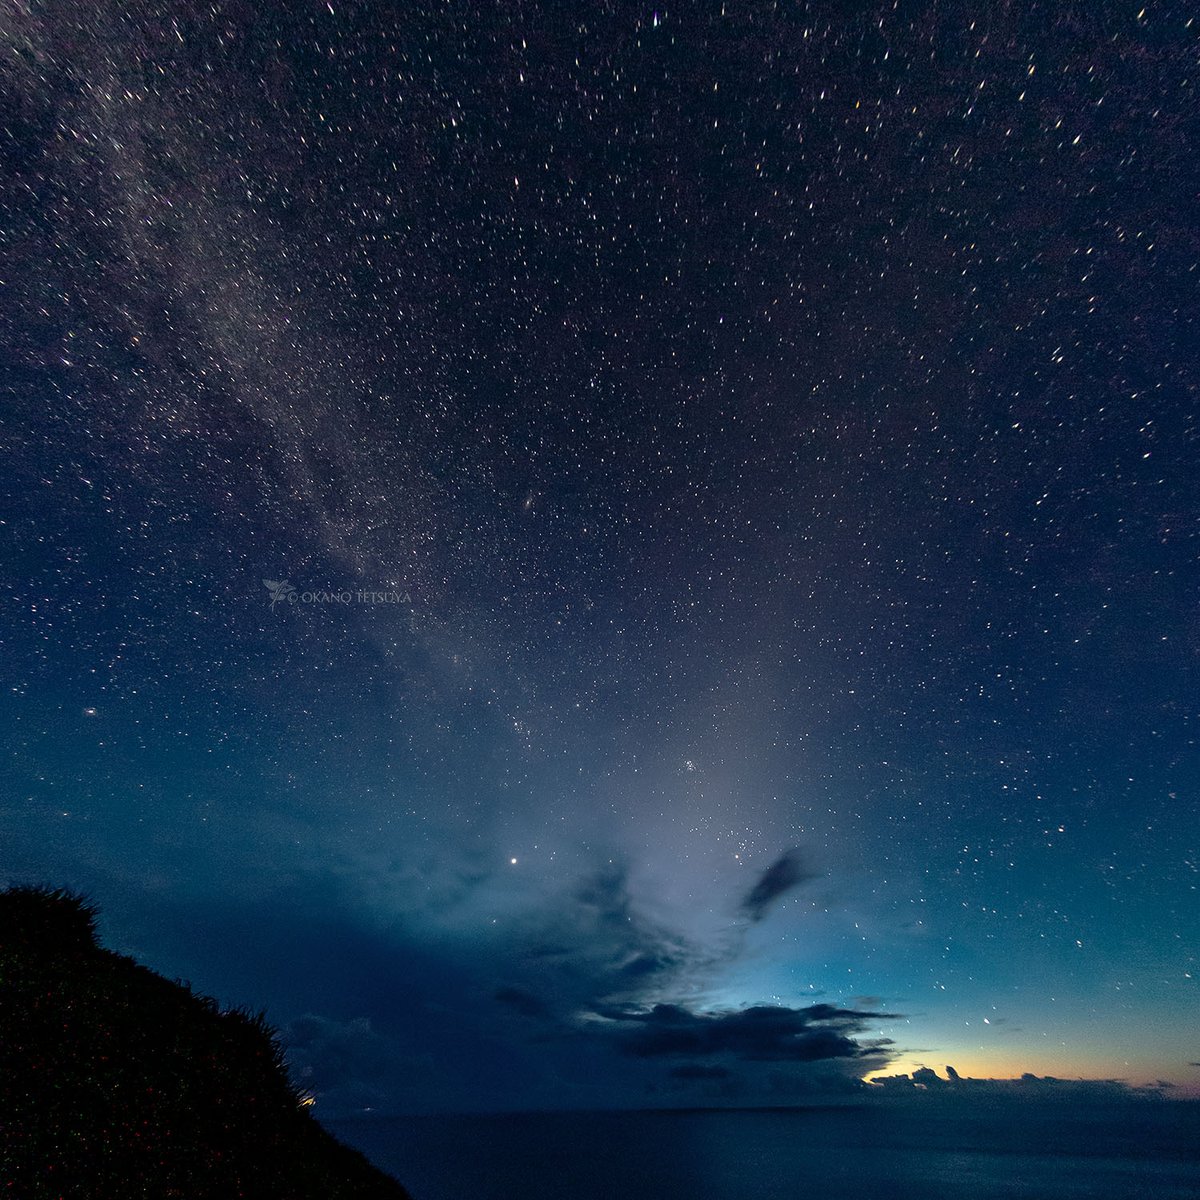 黄道光（Zodiacal light）は天の川よりも薄く淡い光の帯です。
地球近くの宇宙空間に存在する塵が光っているとのこと。
中央より右上に伸びるのが黄道光、左上へ伸びるのが天の川、夏の夜明け前なので冬の星座がいっぱいです。
2018年7月18日3時43分、母島にて
#黄道光 #Zodiacallight #小笠原諸島